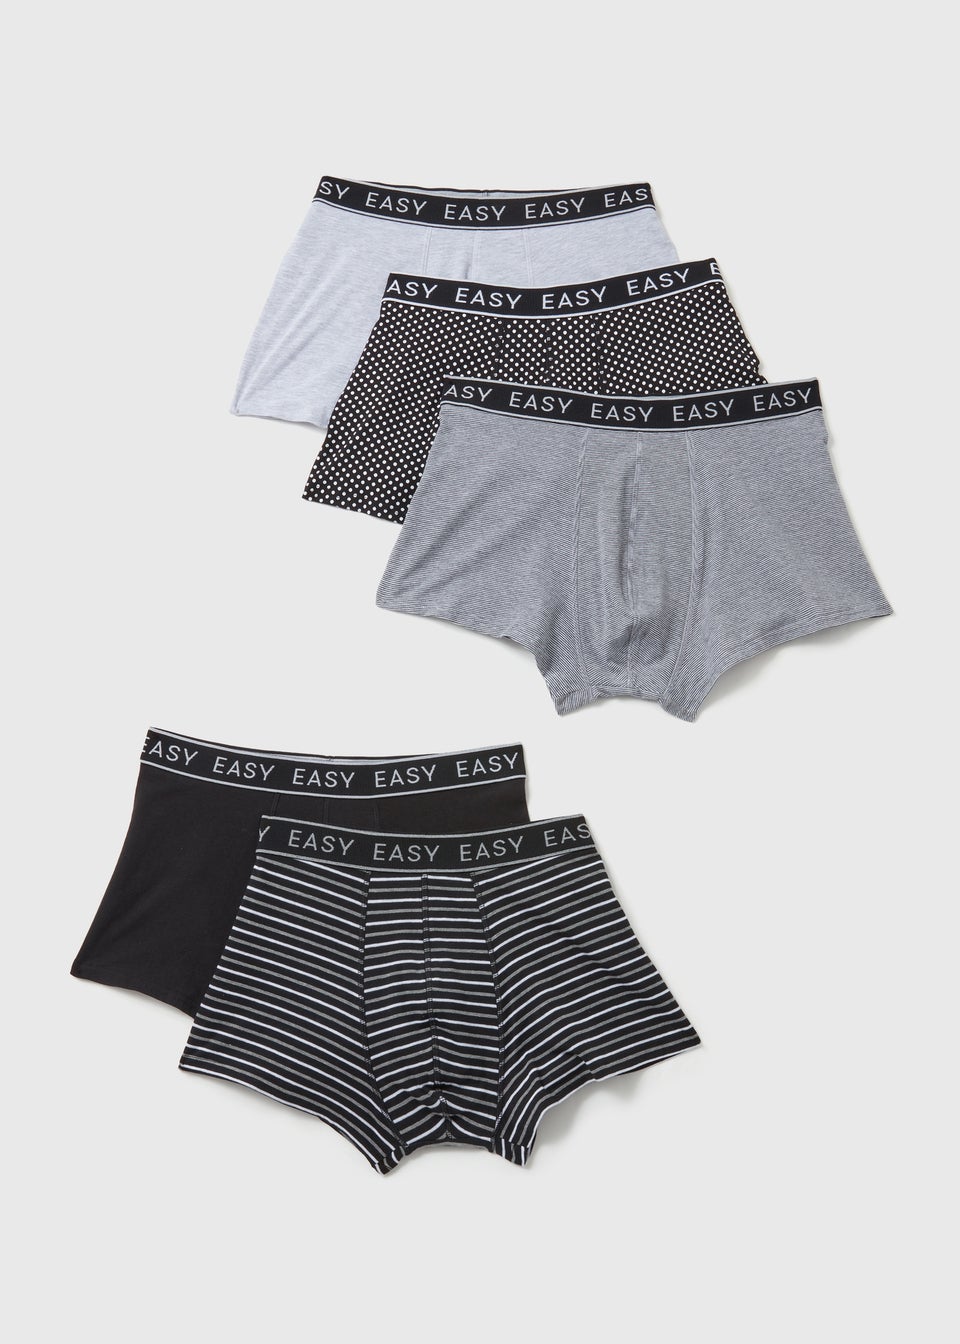 Men's Underwear | Boxers, Briefs & Trunks - Matalan